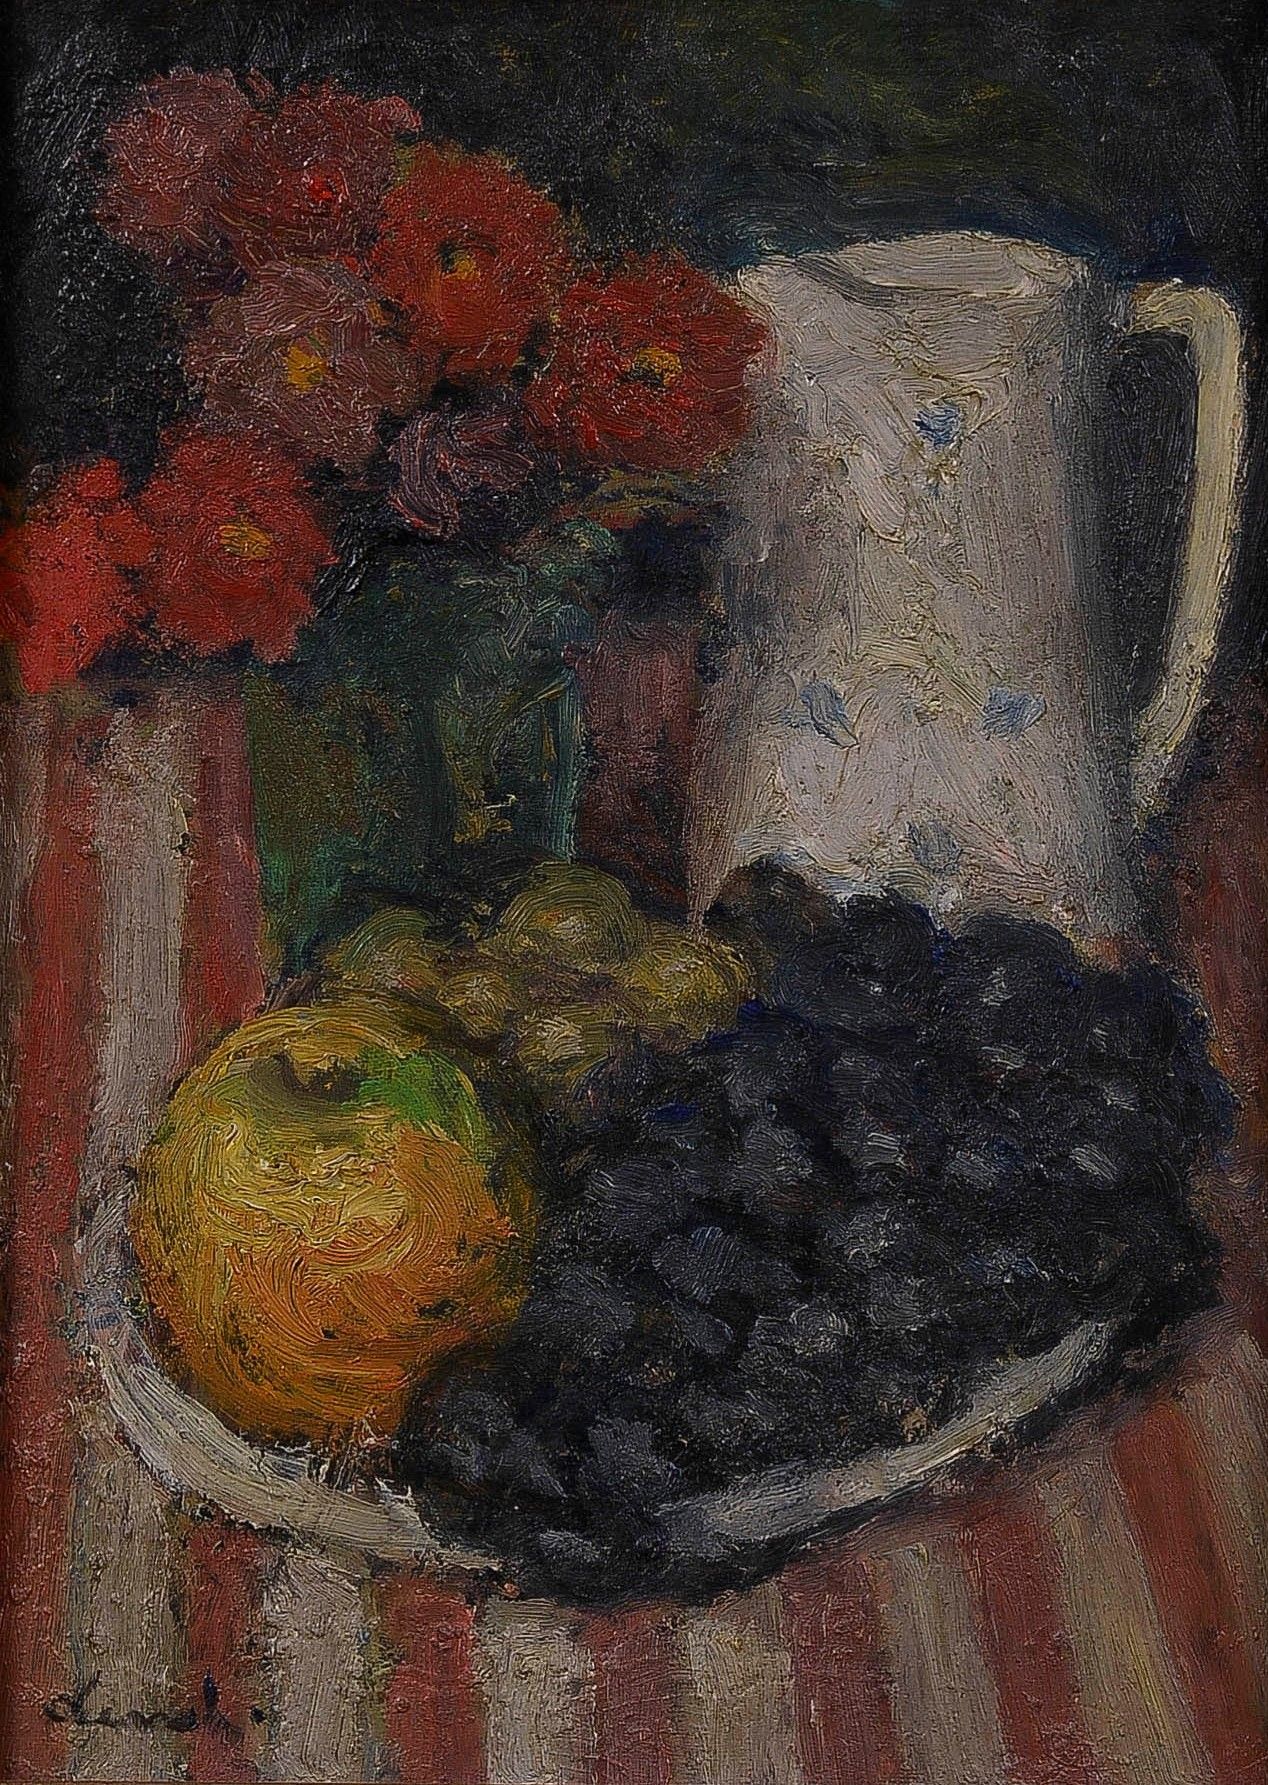 Null 皮埃尔-德瓦尔 (1897-1993)

水果和鲜花 1985年

木板油画，左下方有签名，背面有标题和日期

33 x 24 厘米